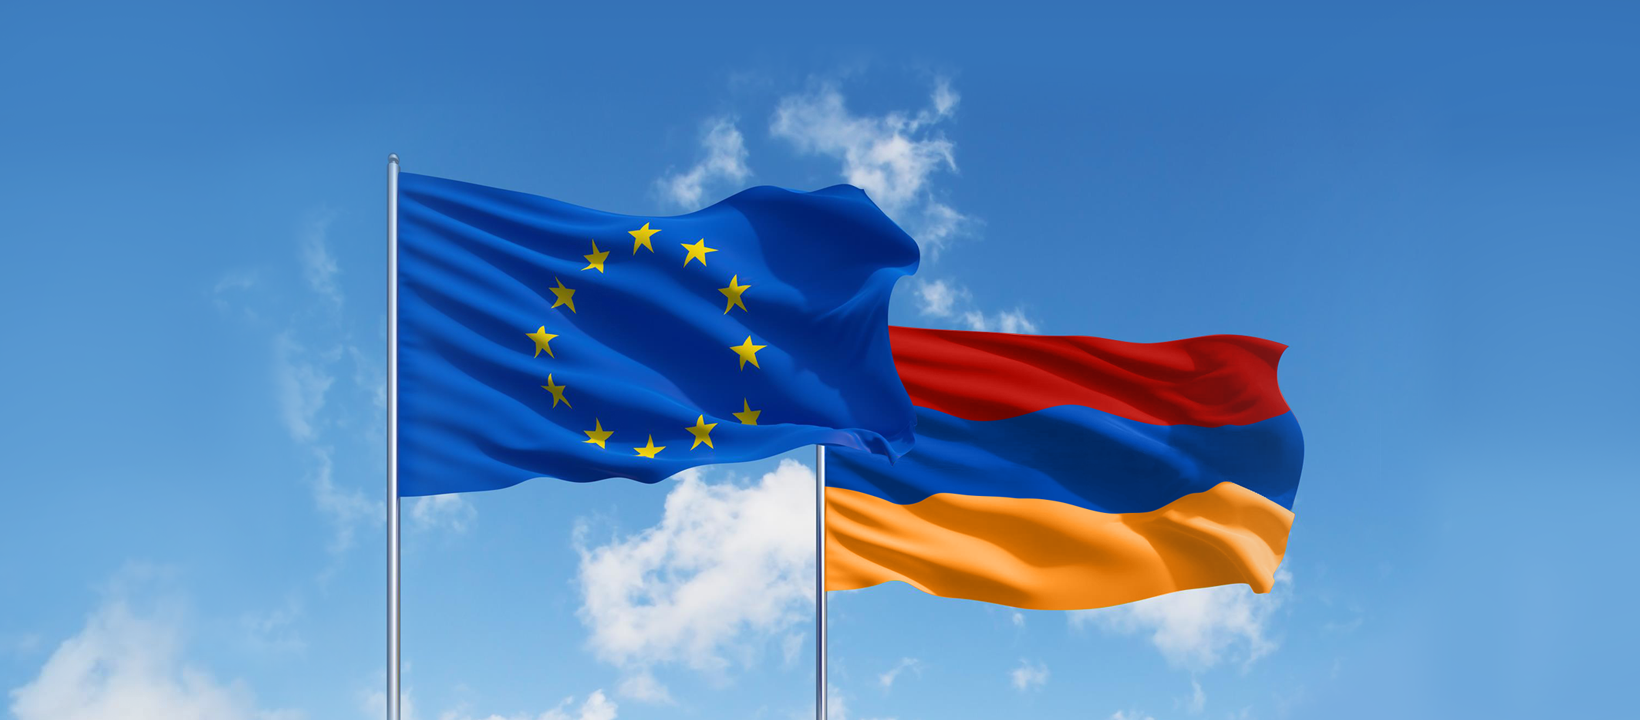 ԵՄ-ն Հայաստանին կհատկացնի 11 մլն եվրո արդարադատության ոլորտում բարեփոխումների համար